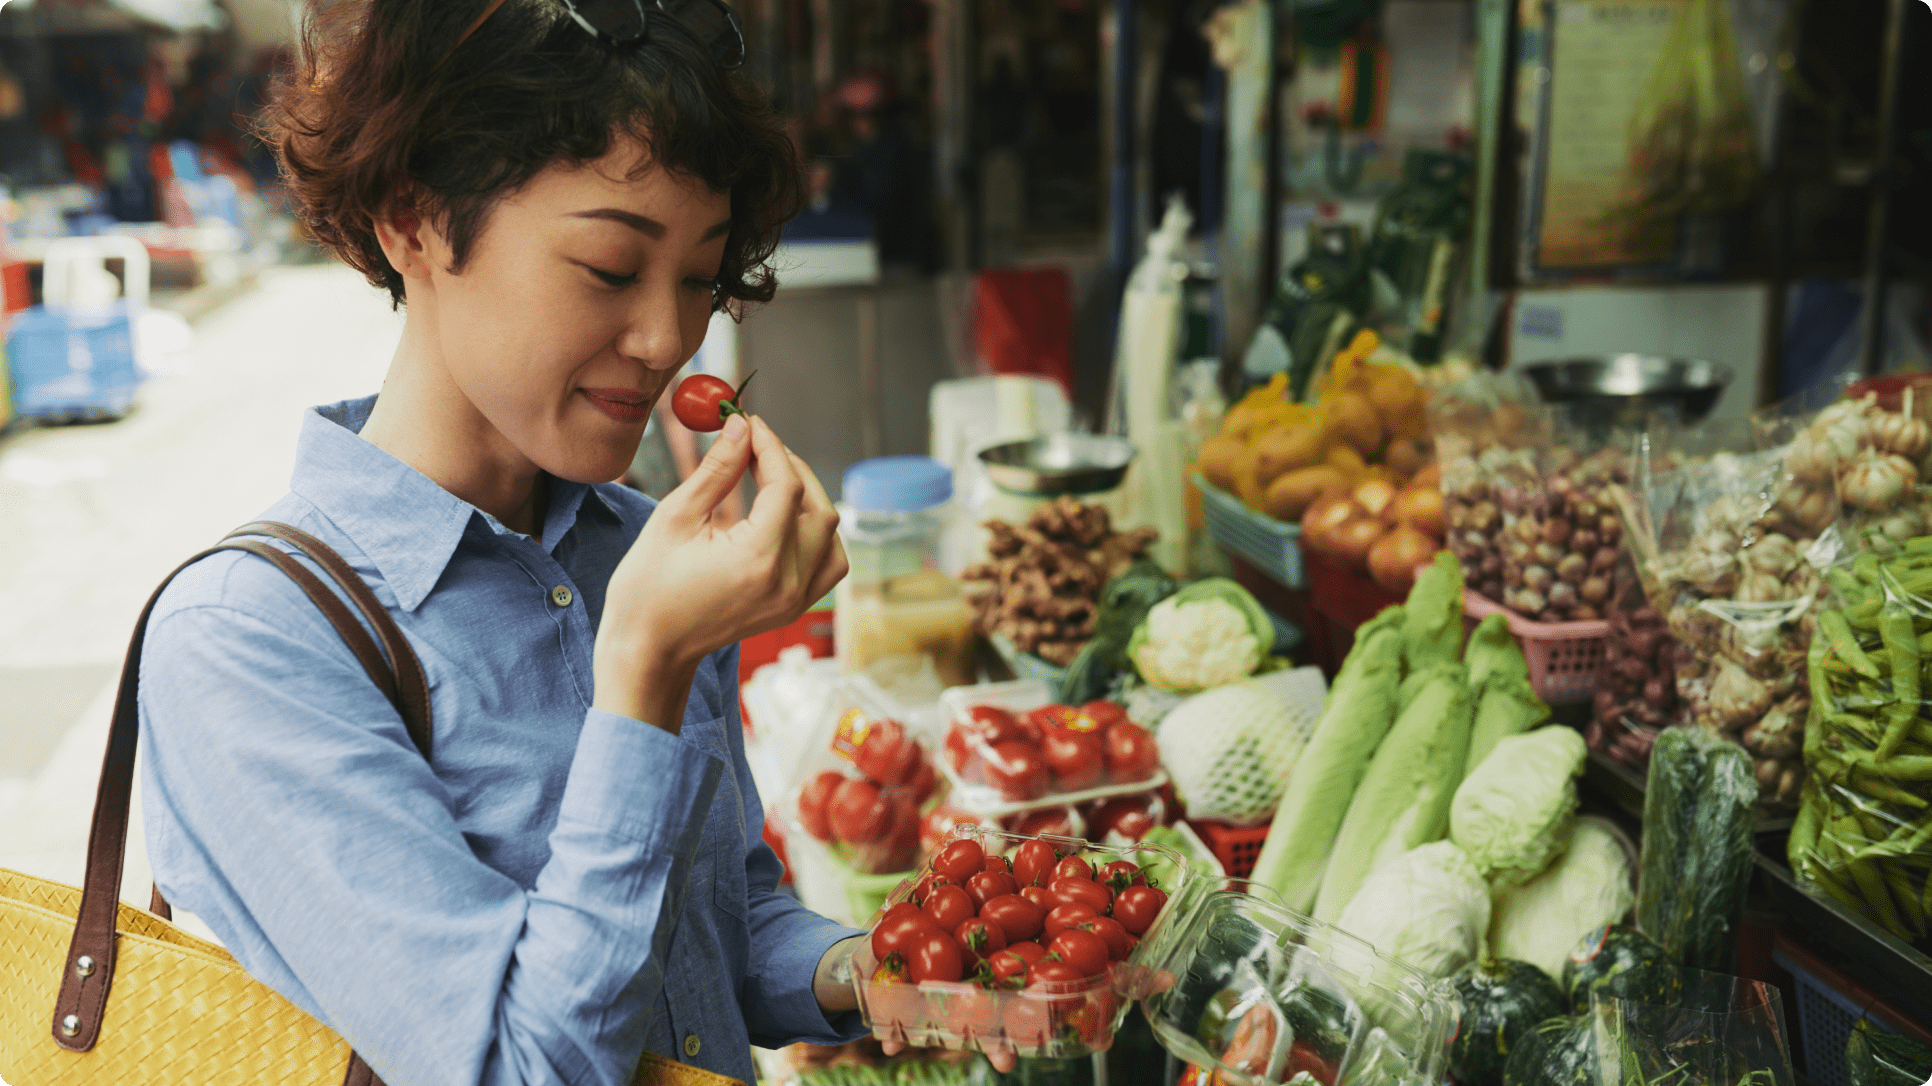 Cải thiện sức khỏe tinh thần ngay với 9 bí quyết sau | Prudential Việt Nam 1